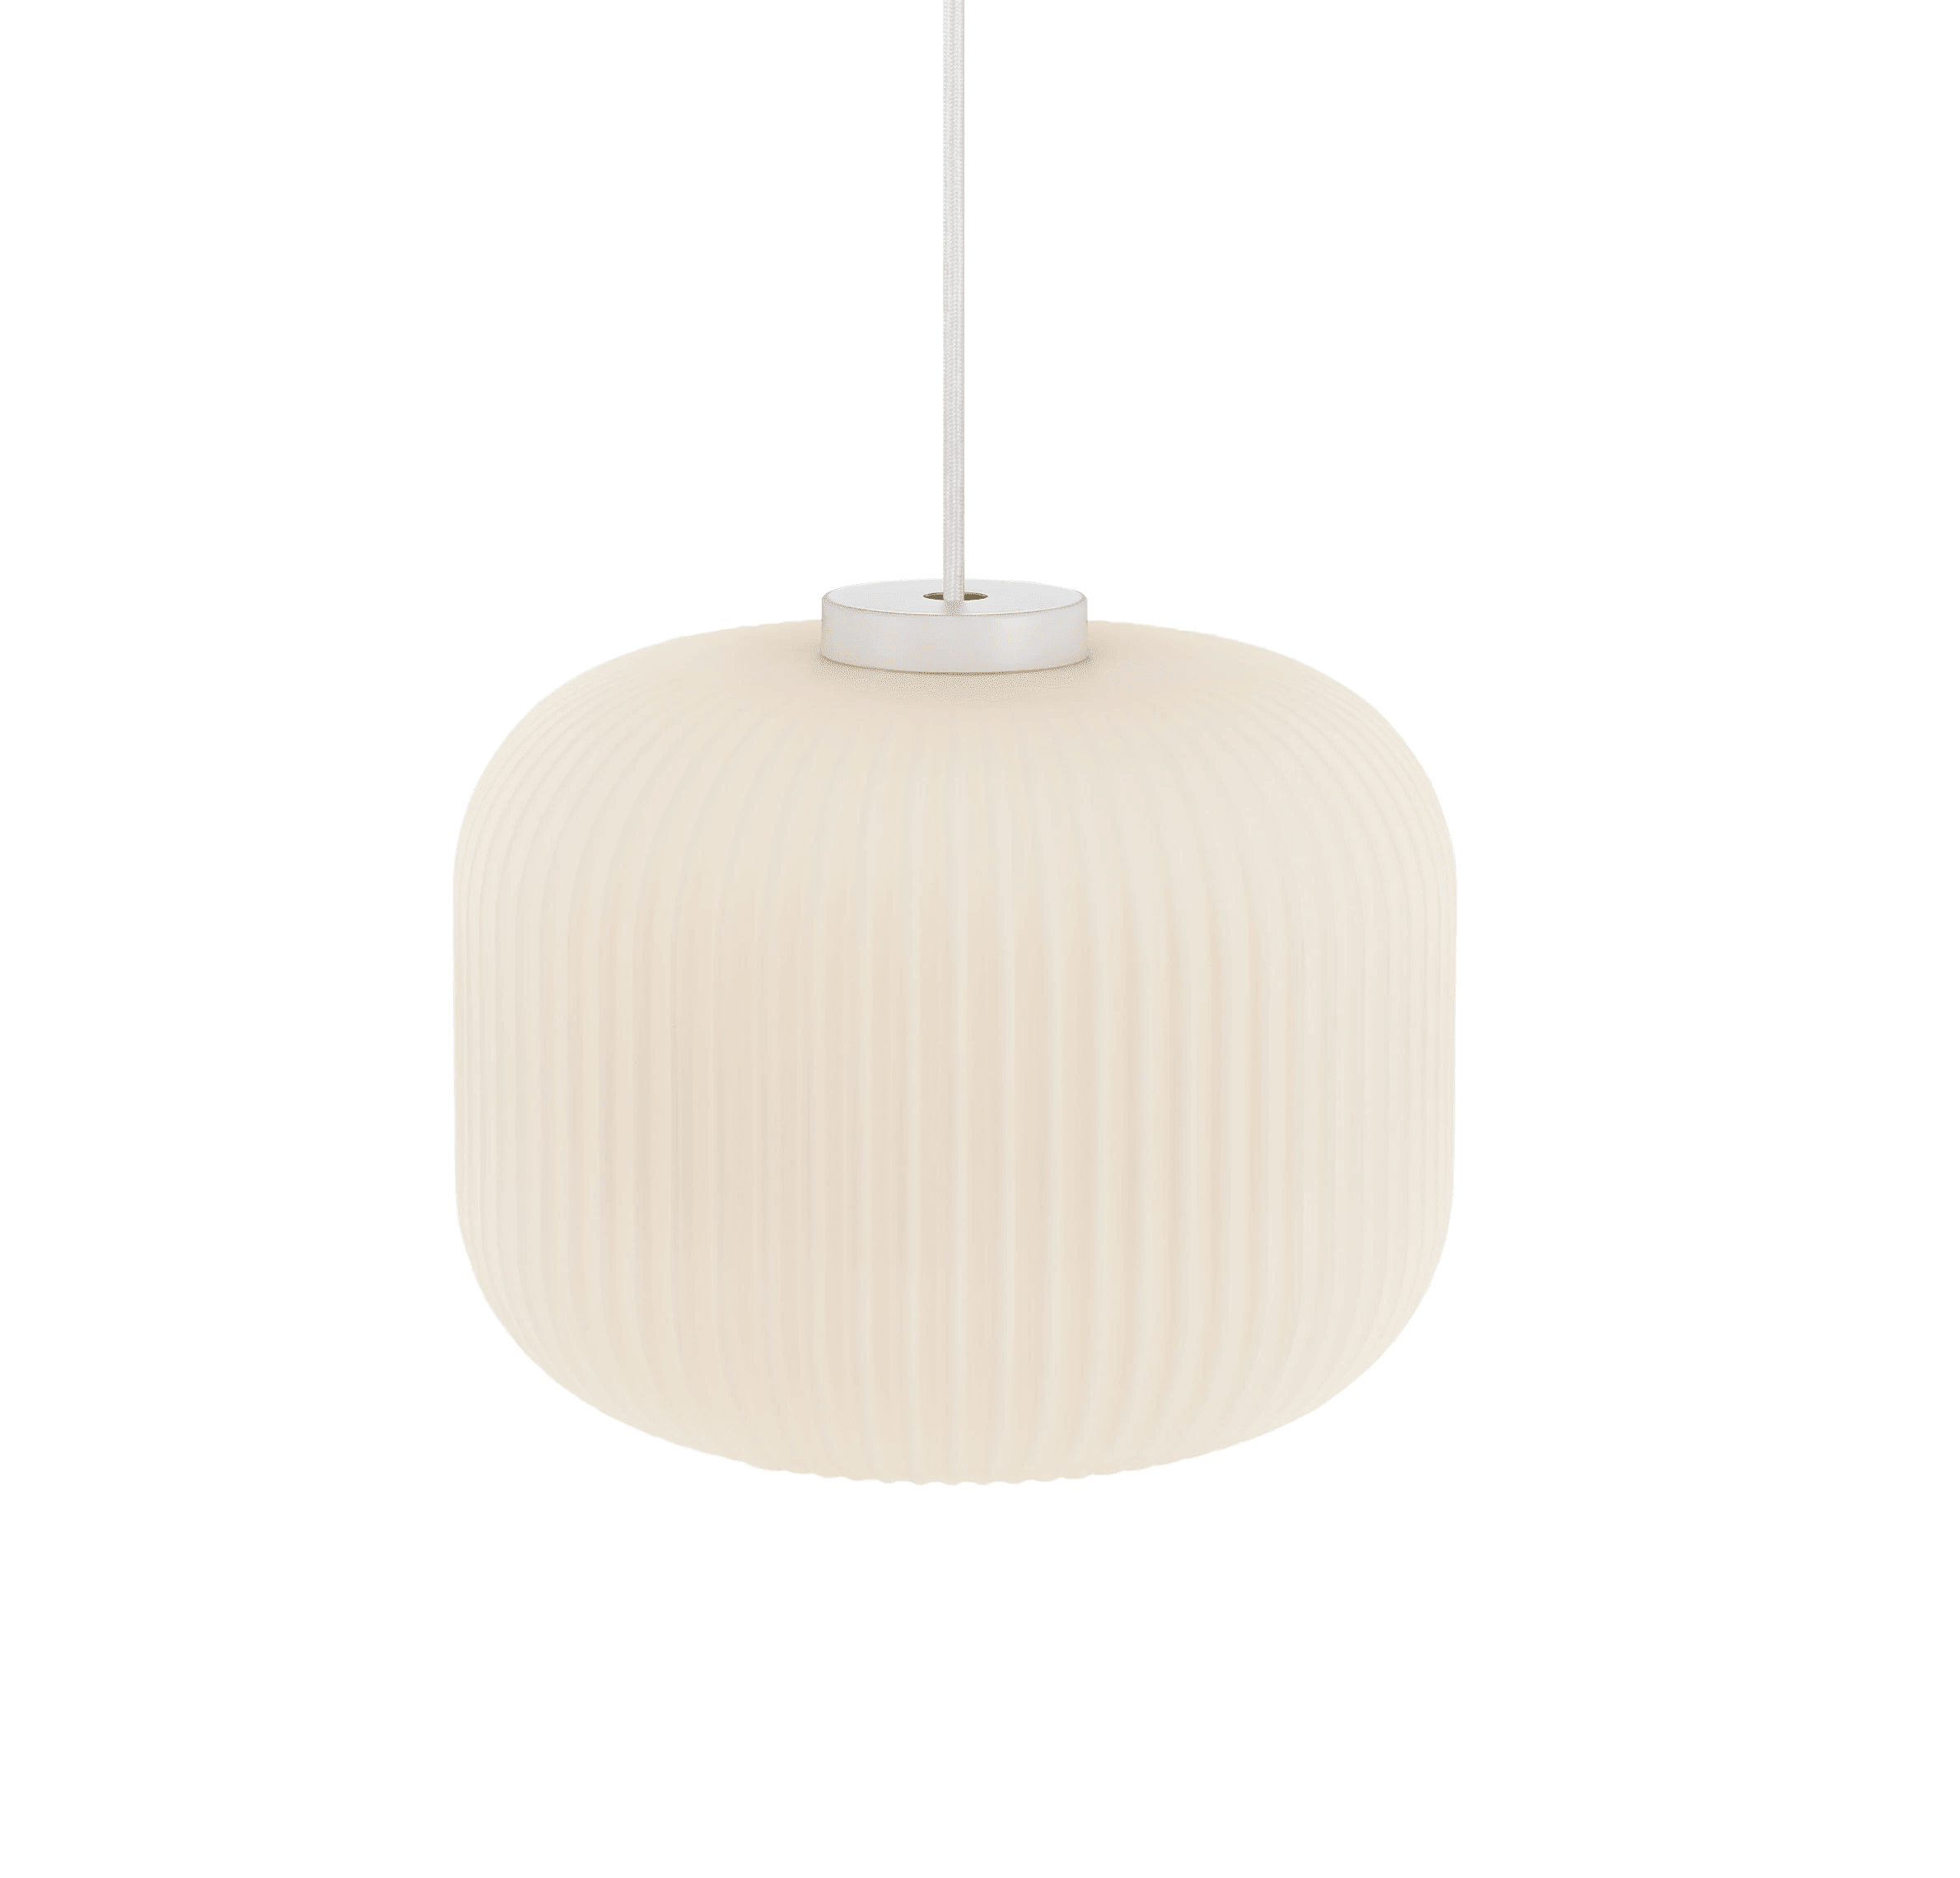 Lampa wisząca MILFORD OVAL szkło z białym wykończeniem, Nordlux, Eye on Design